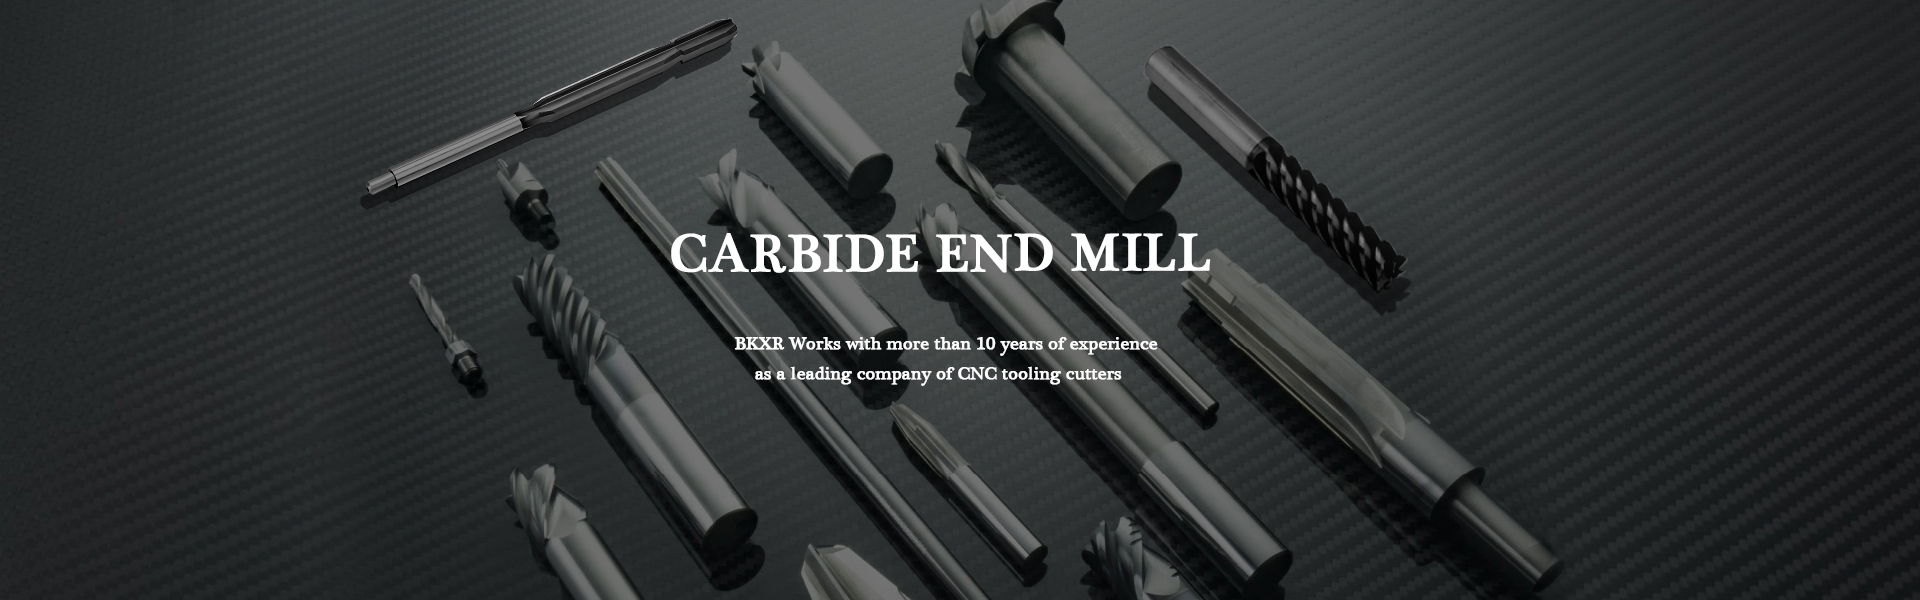 Carbide-eindmolen, carbide-inzetstuk, CNC-snijder,Guangdong Berkshire Technology Ltd.